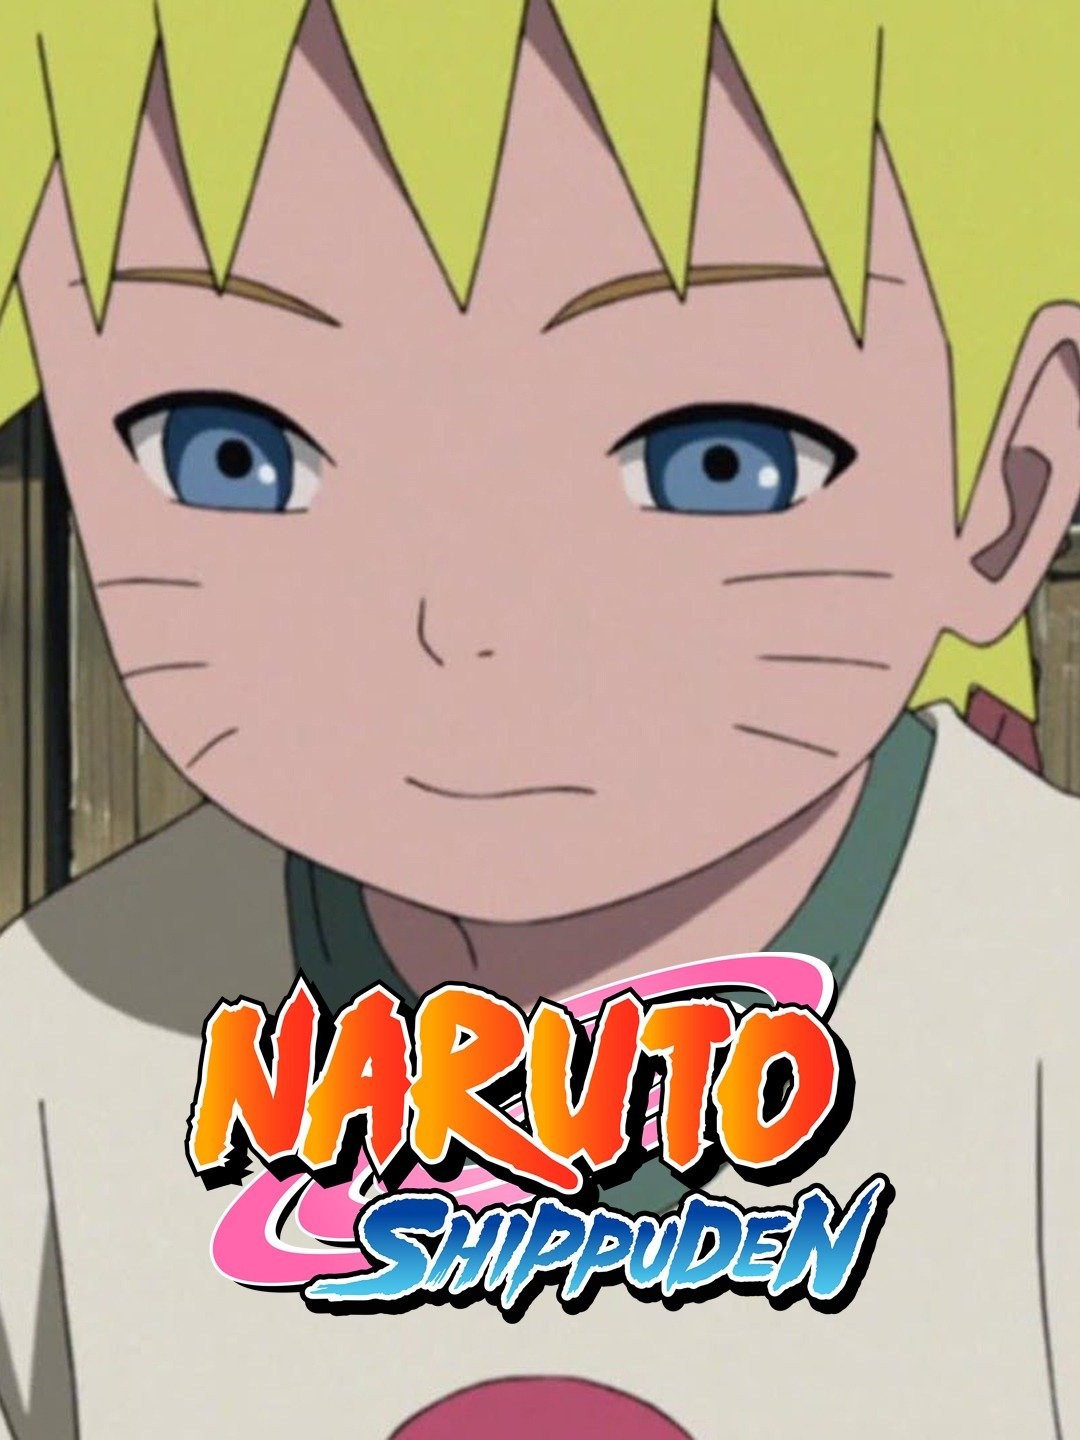 Naruto: Shippuden (season 21) - Wikipedia